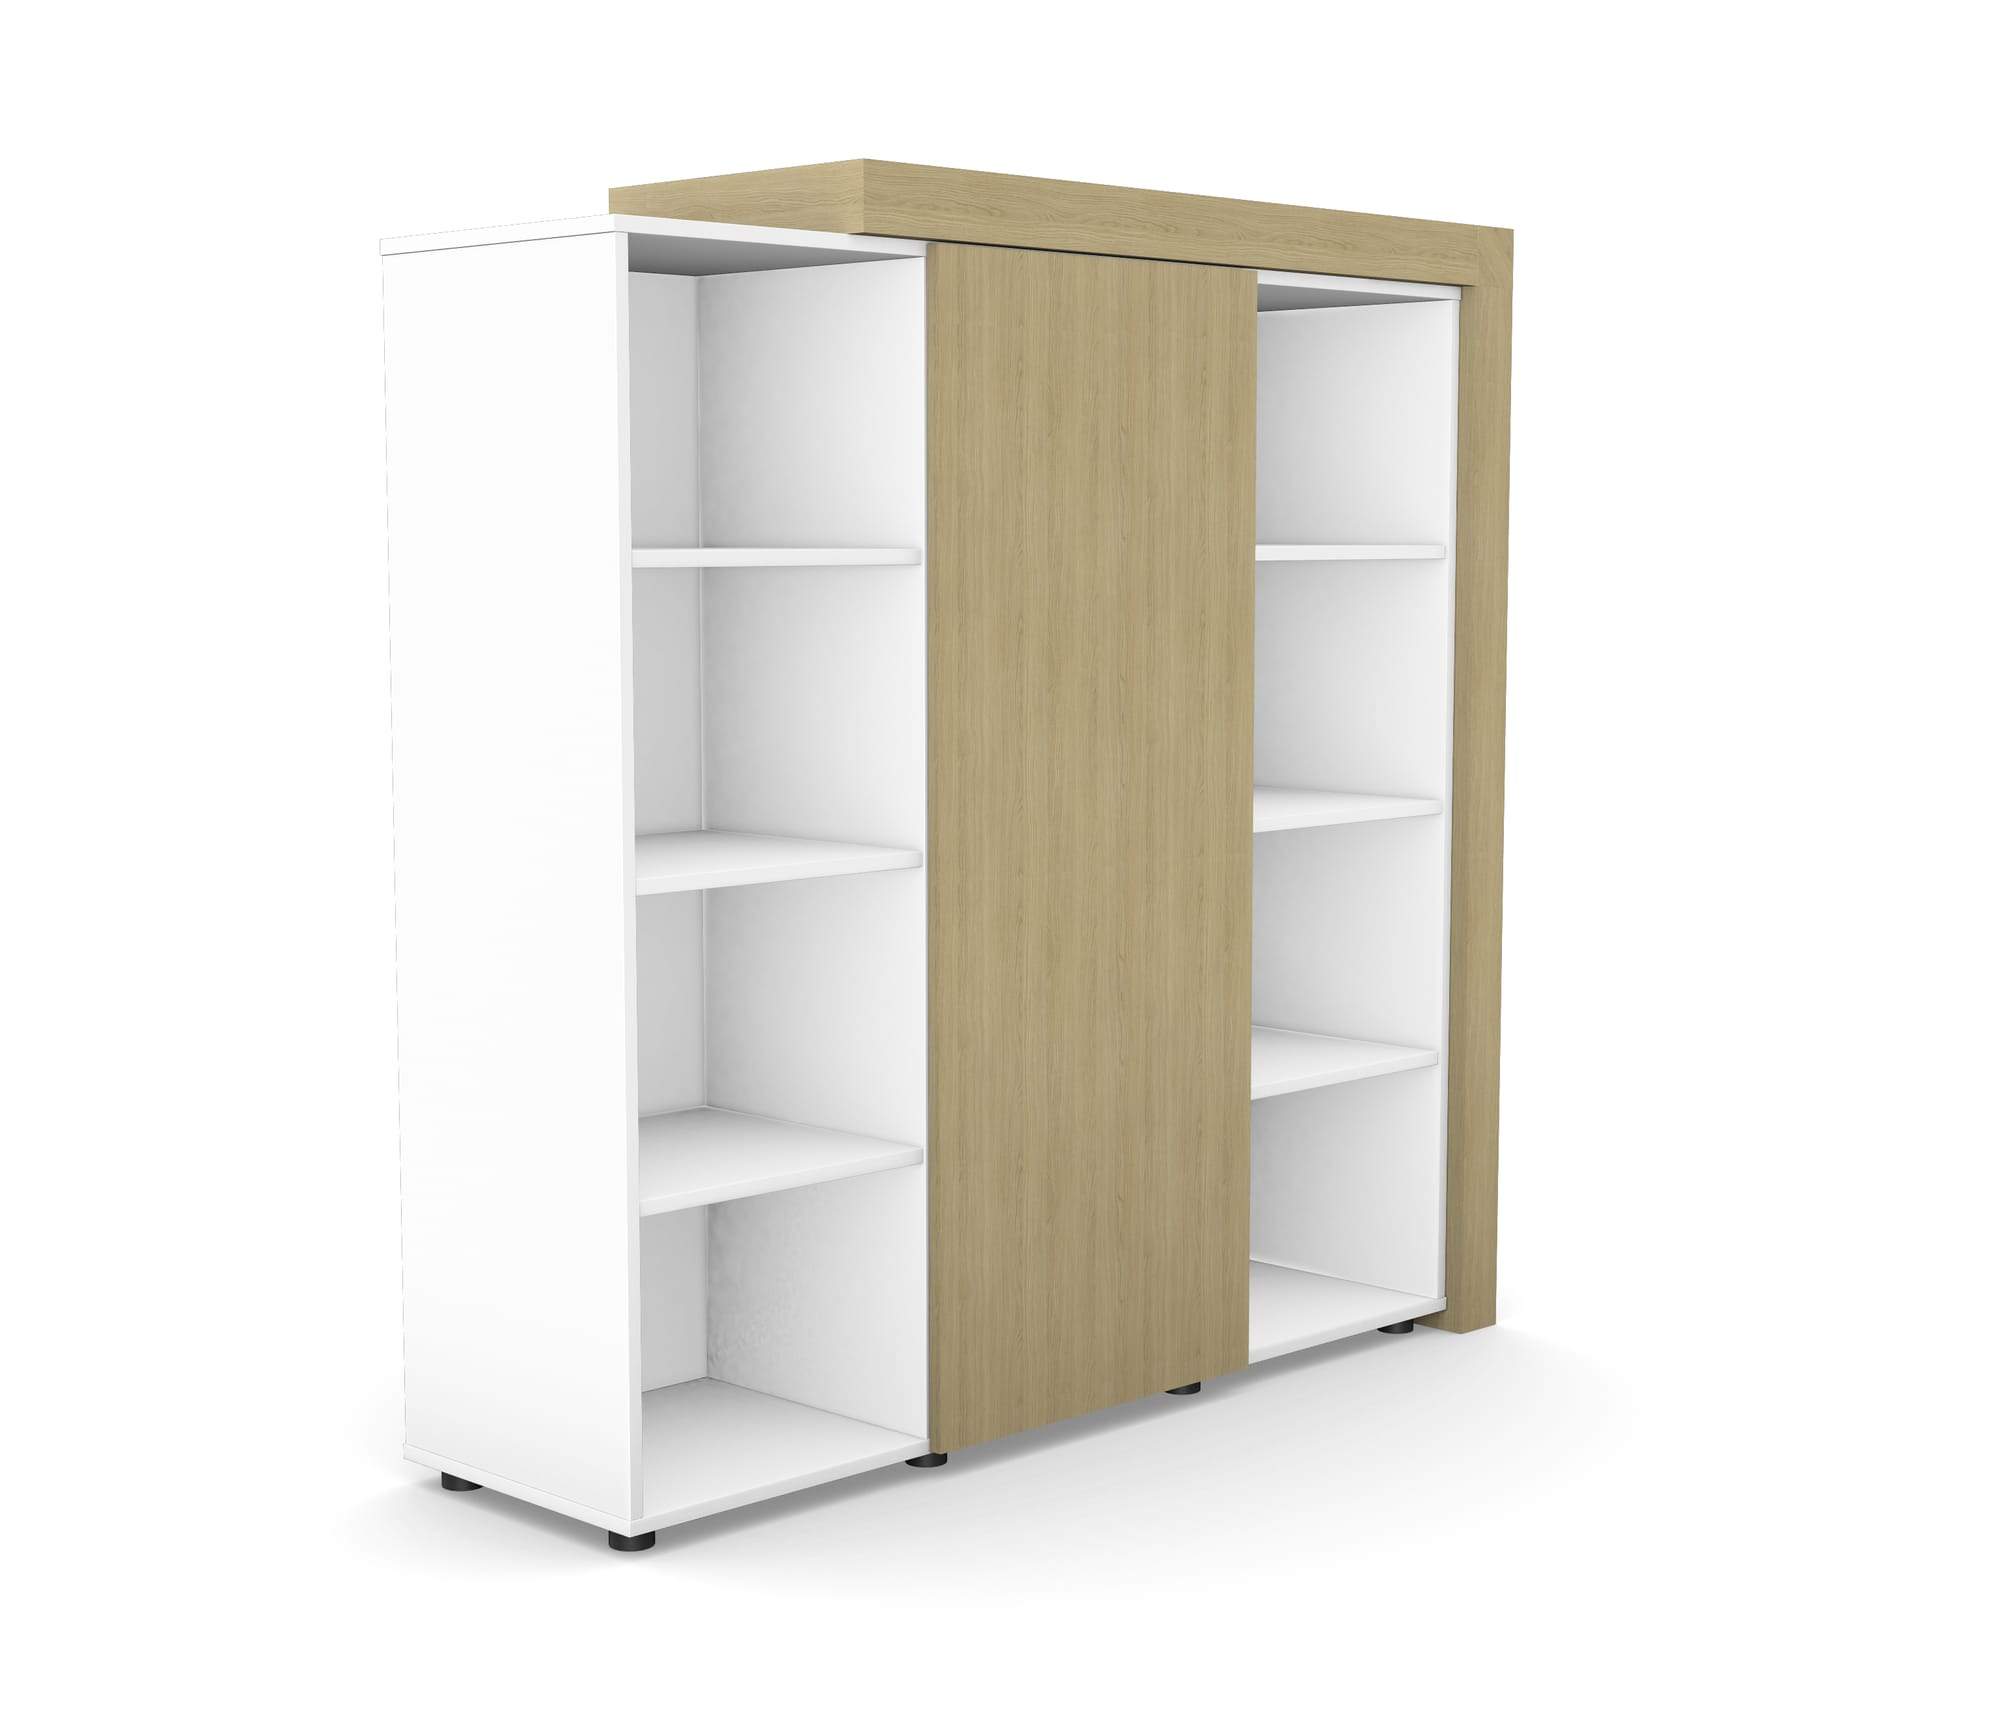 Auttica Wardrobe 1530x450x1520 (Door + Shelves)